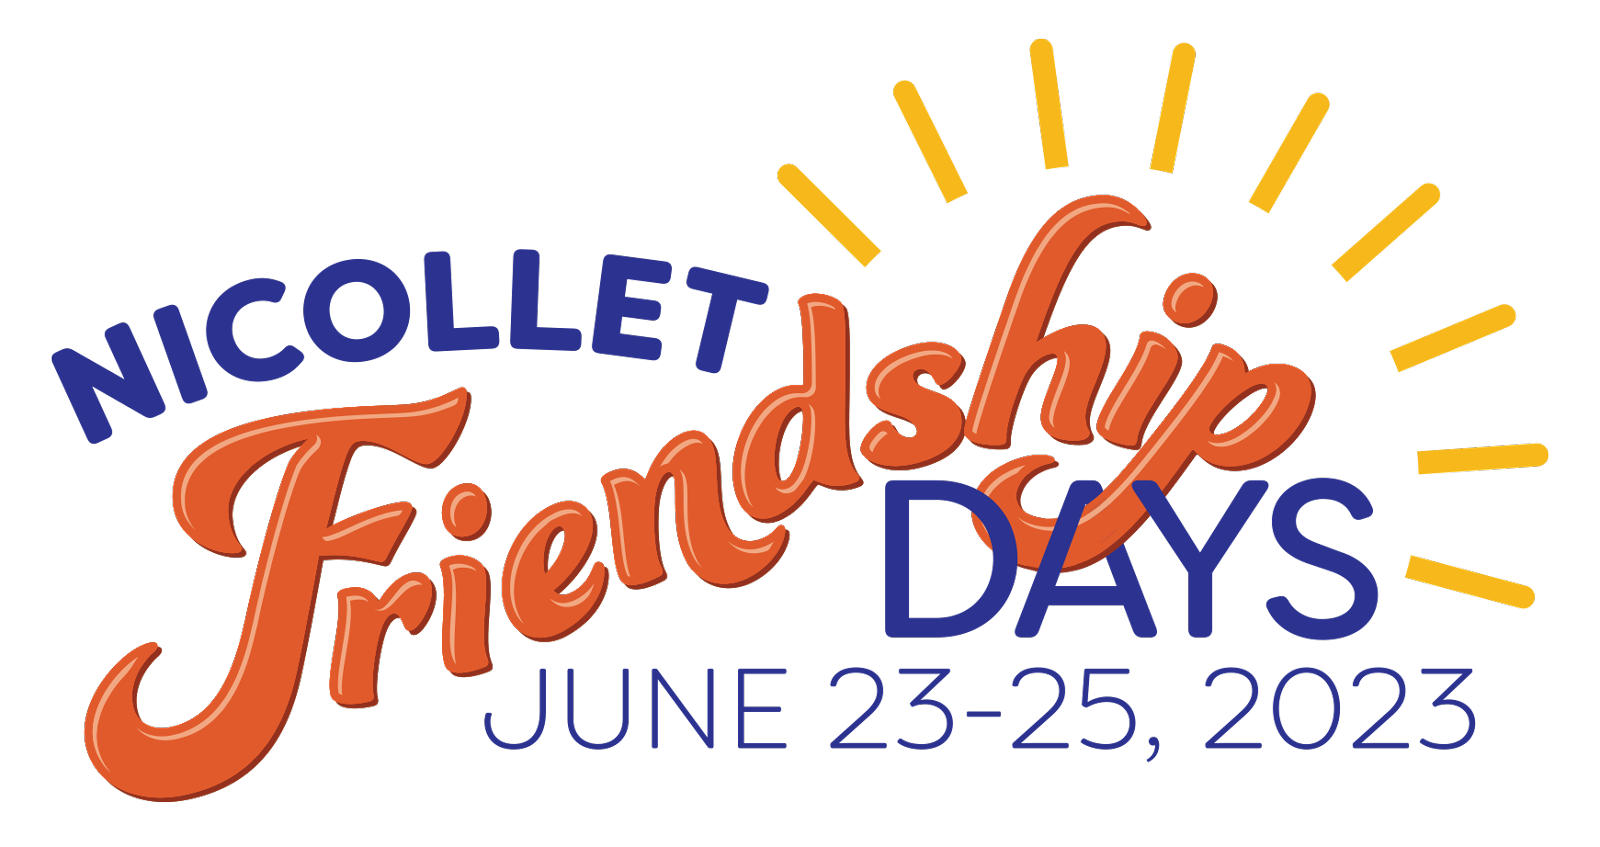 Friendship Day 2023: When is Friendship Day 2023? Date